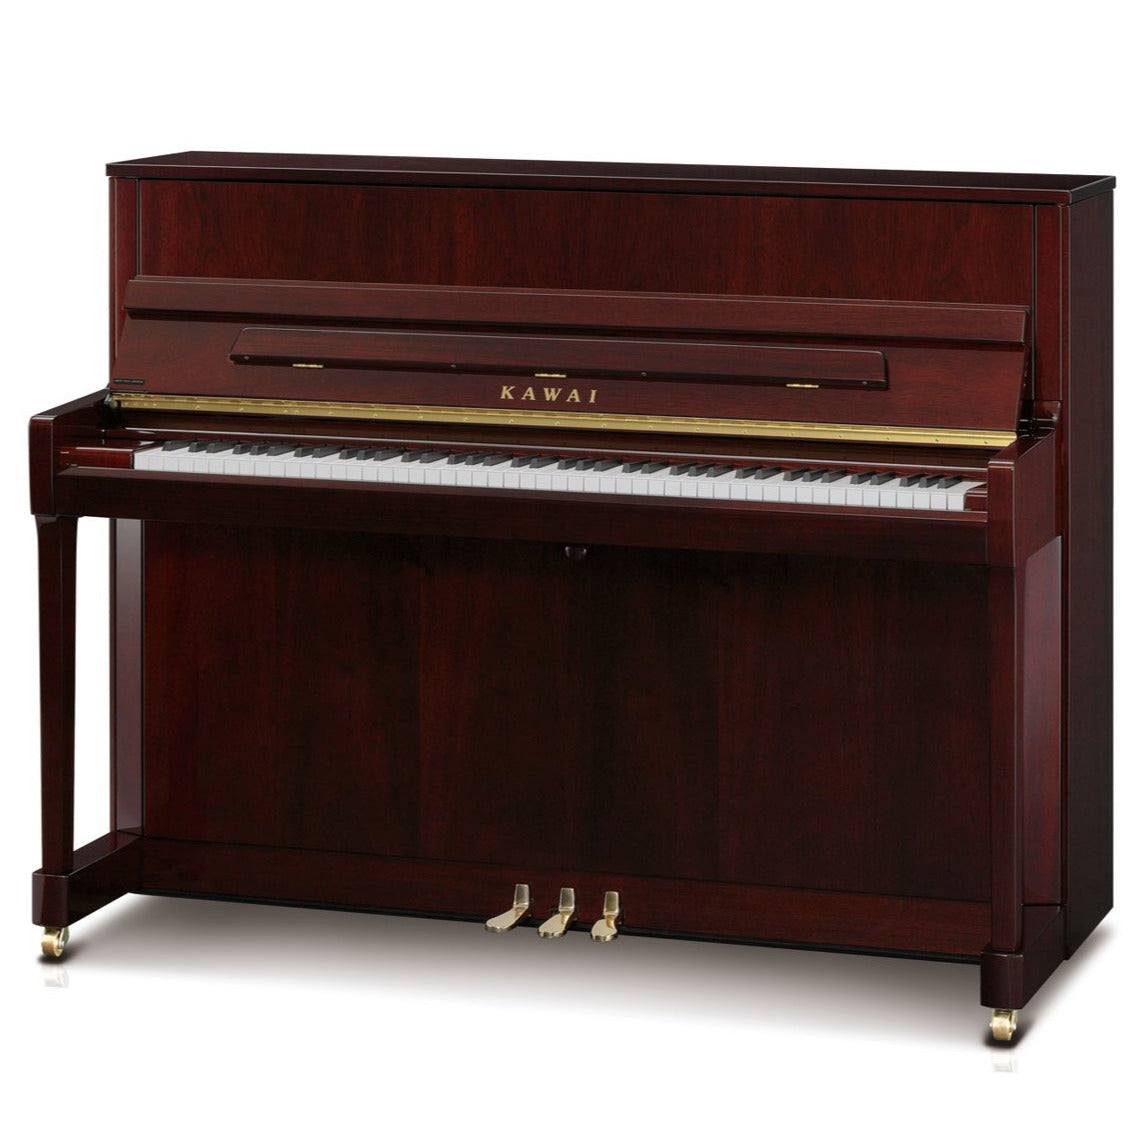 KAWAI K-200 UPRIGHT PIANO MAHOGANY POLISH (114CM) W/BENCH (MII), KAWAI, ACOUSTIC PIANO, kawai-acoustic-piano-k200-mh, ZOSO MUSIC SDN BHD